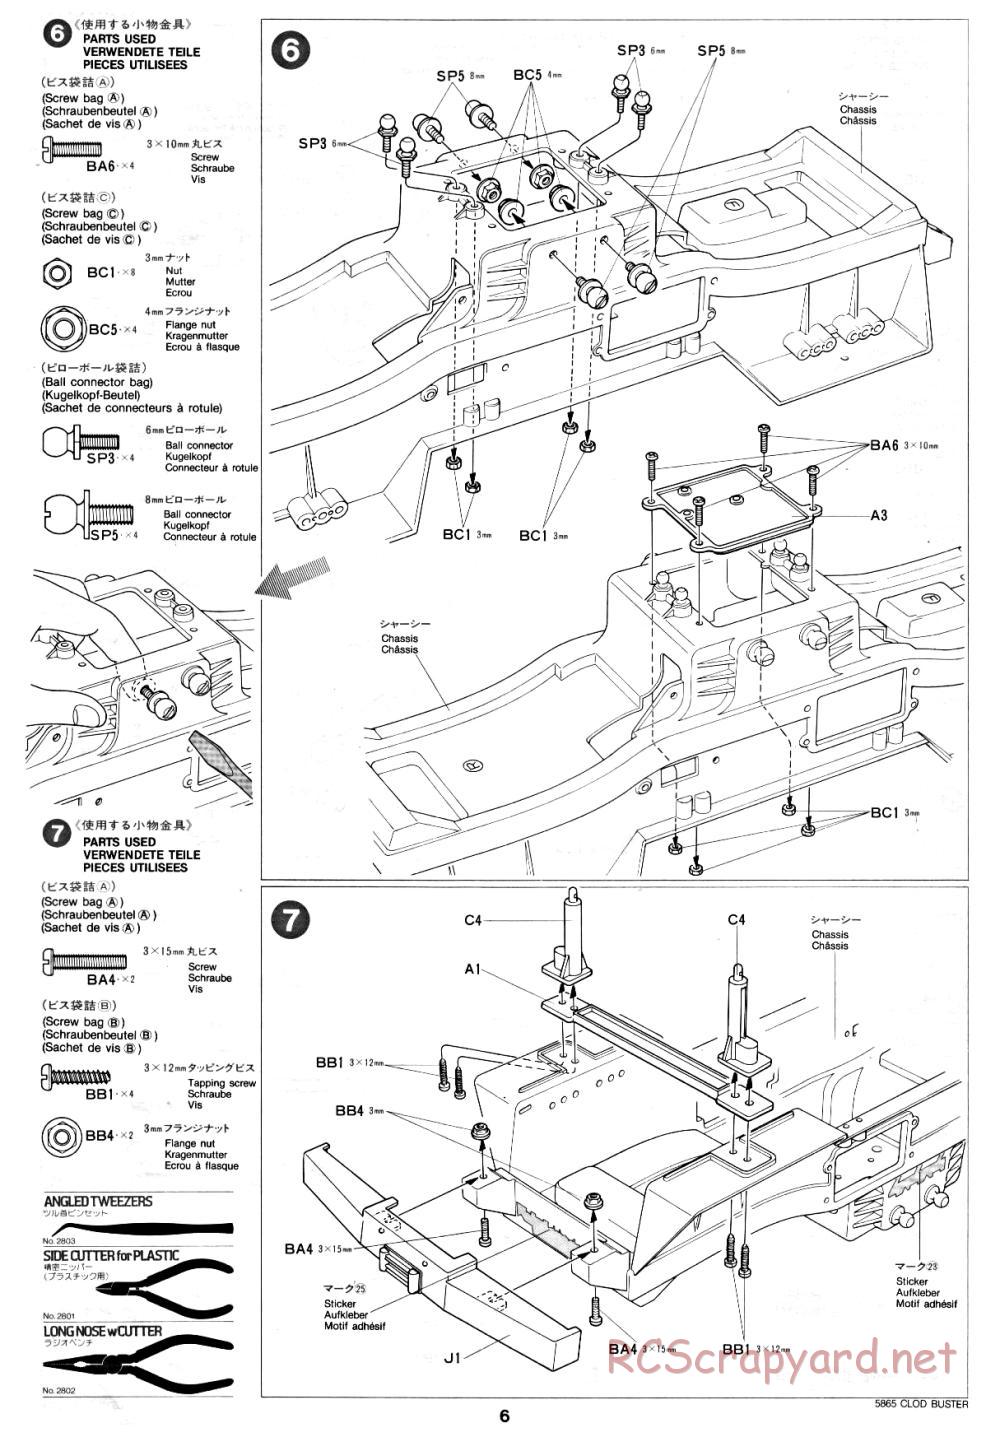 Tamiya - Clod Buster - 58065 - Manual - Page 6